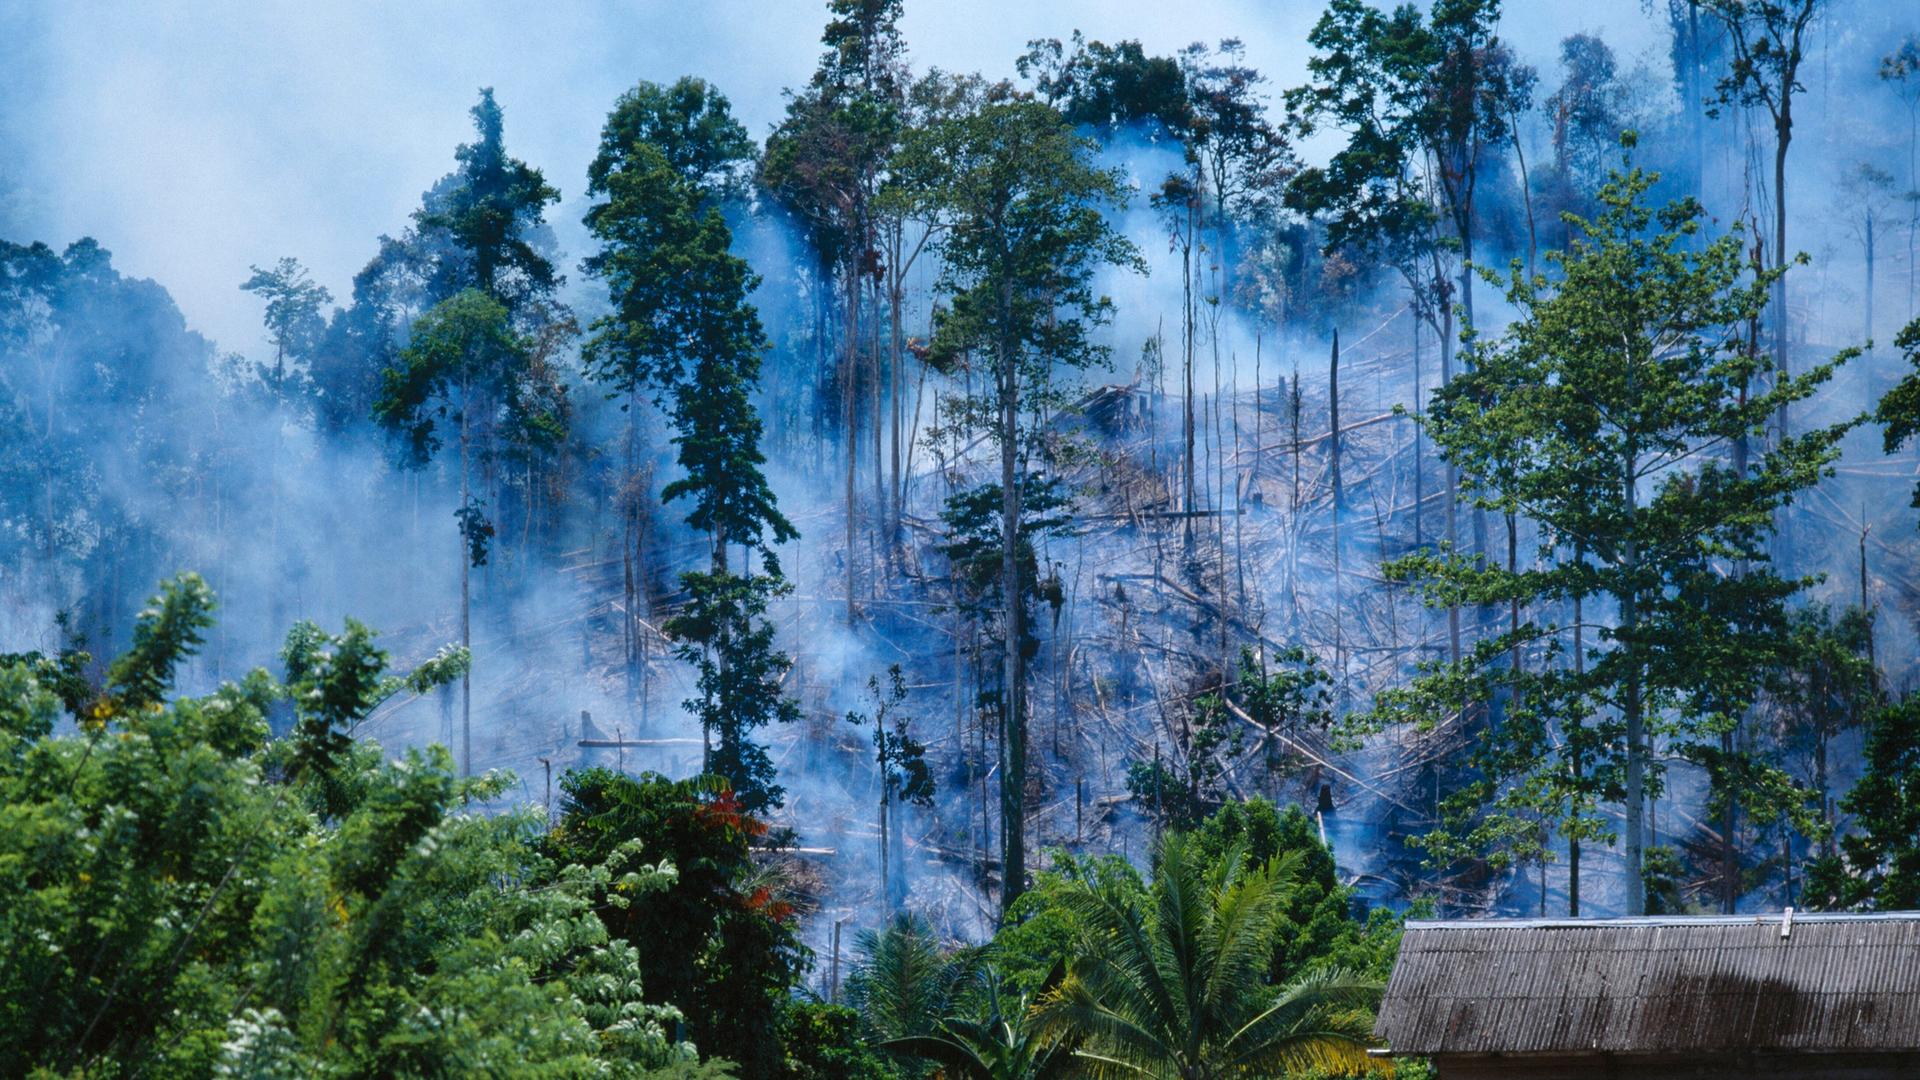 Zu sehen ist ein zerstörter Regenwald in Java/Indonesien. Zwischen den Bäumen hängen Rauchschwaden.